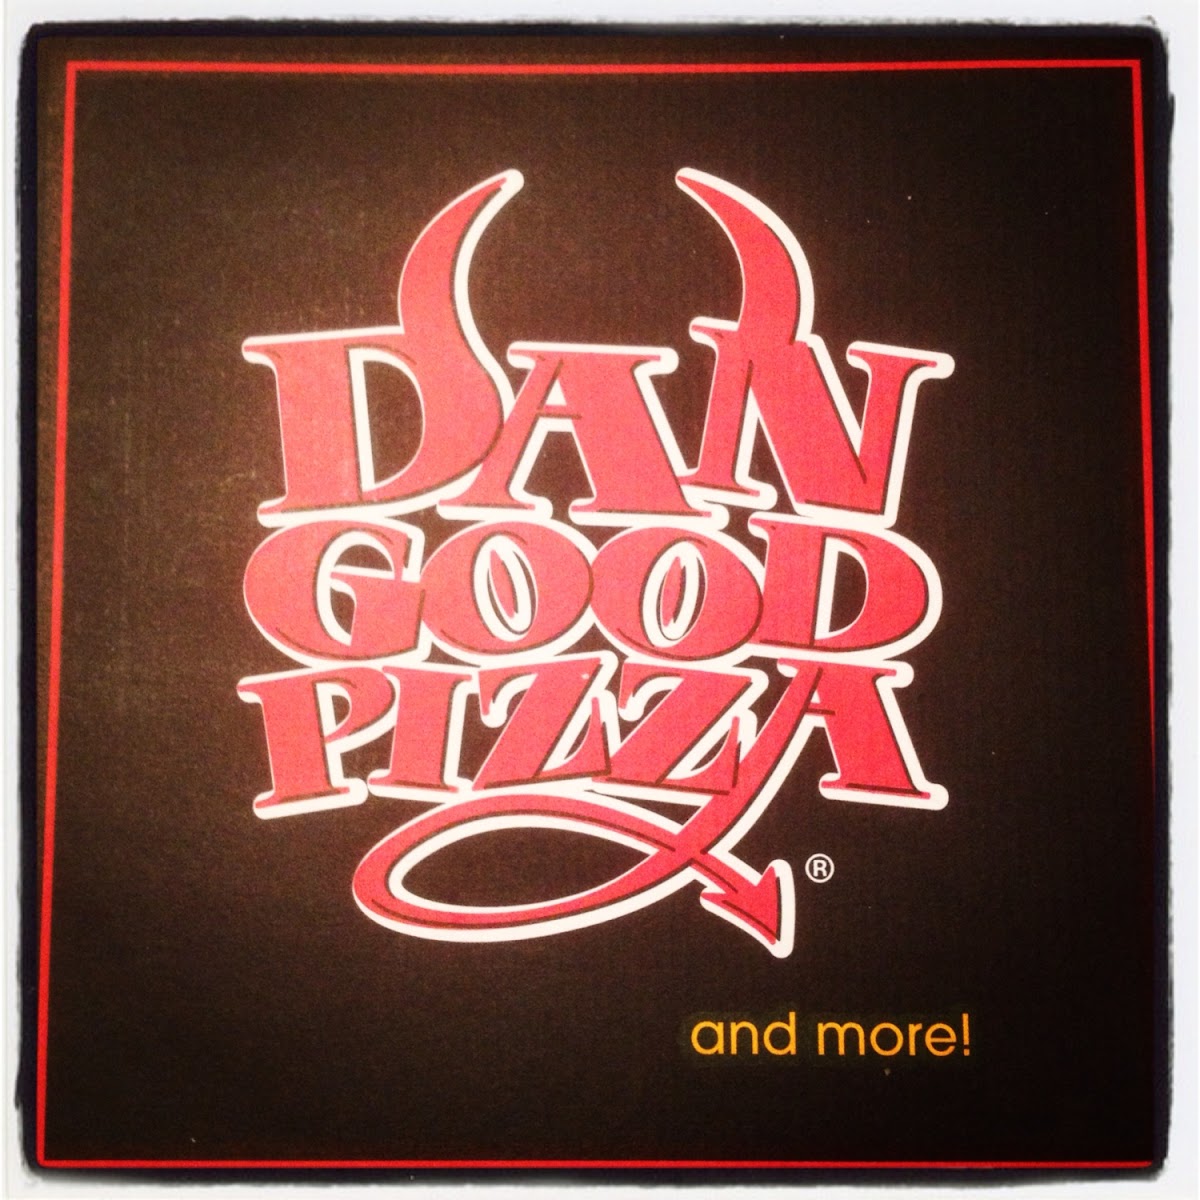 Gluten-Free at Dan Good Pizza